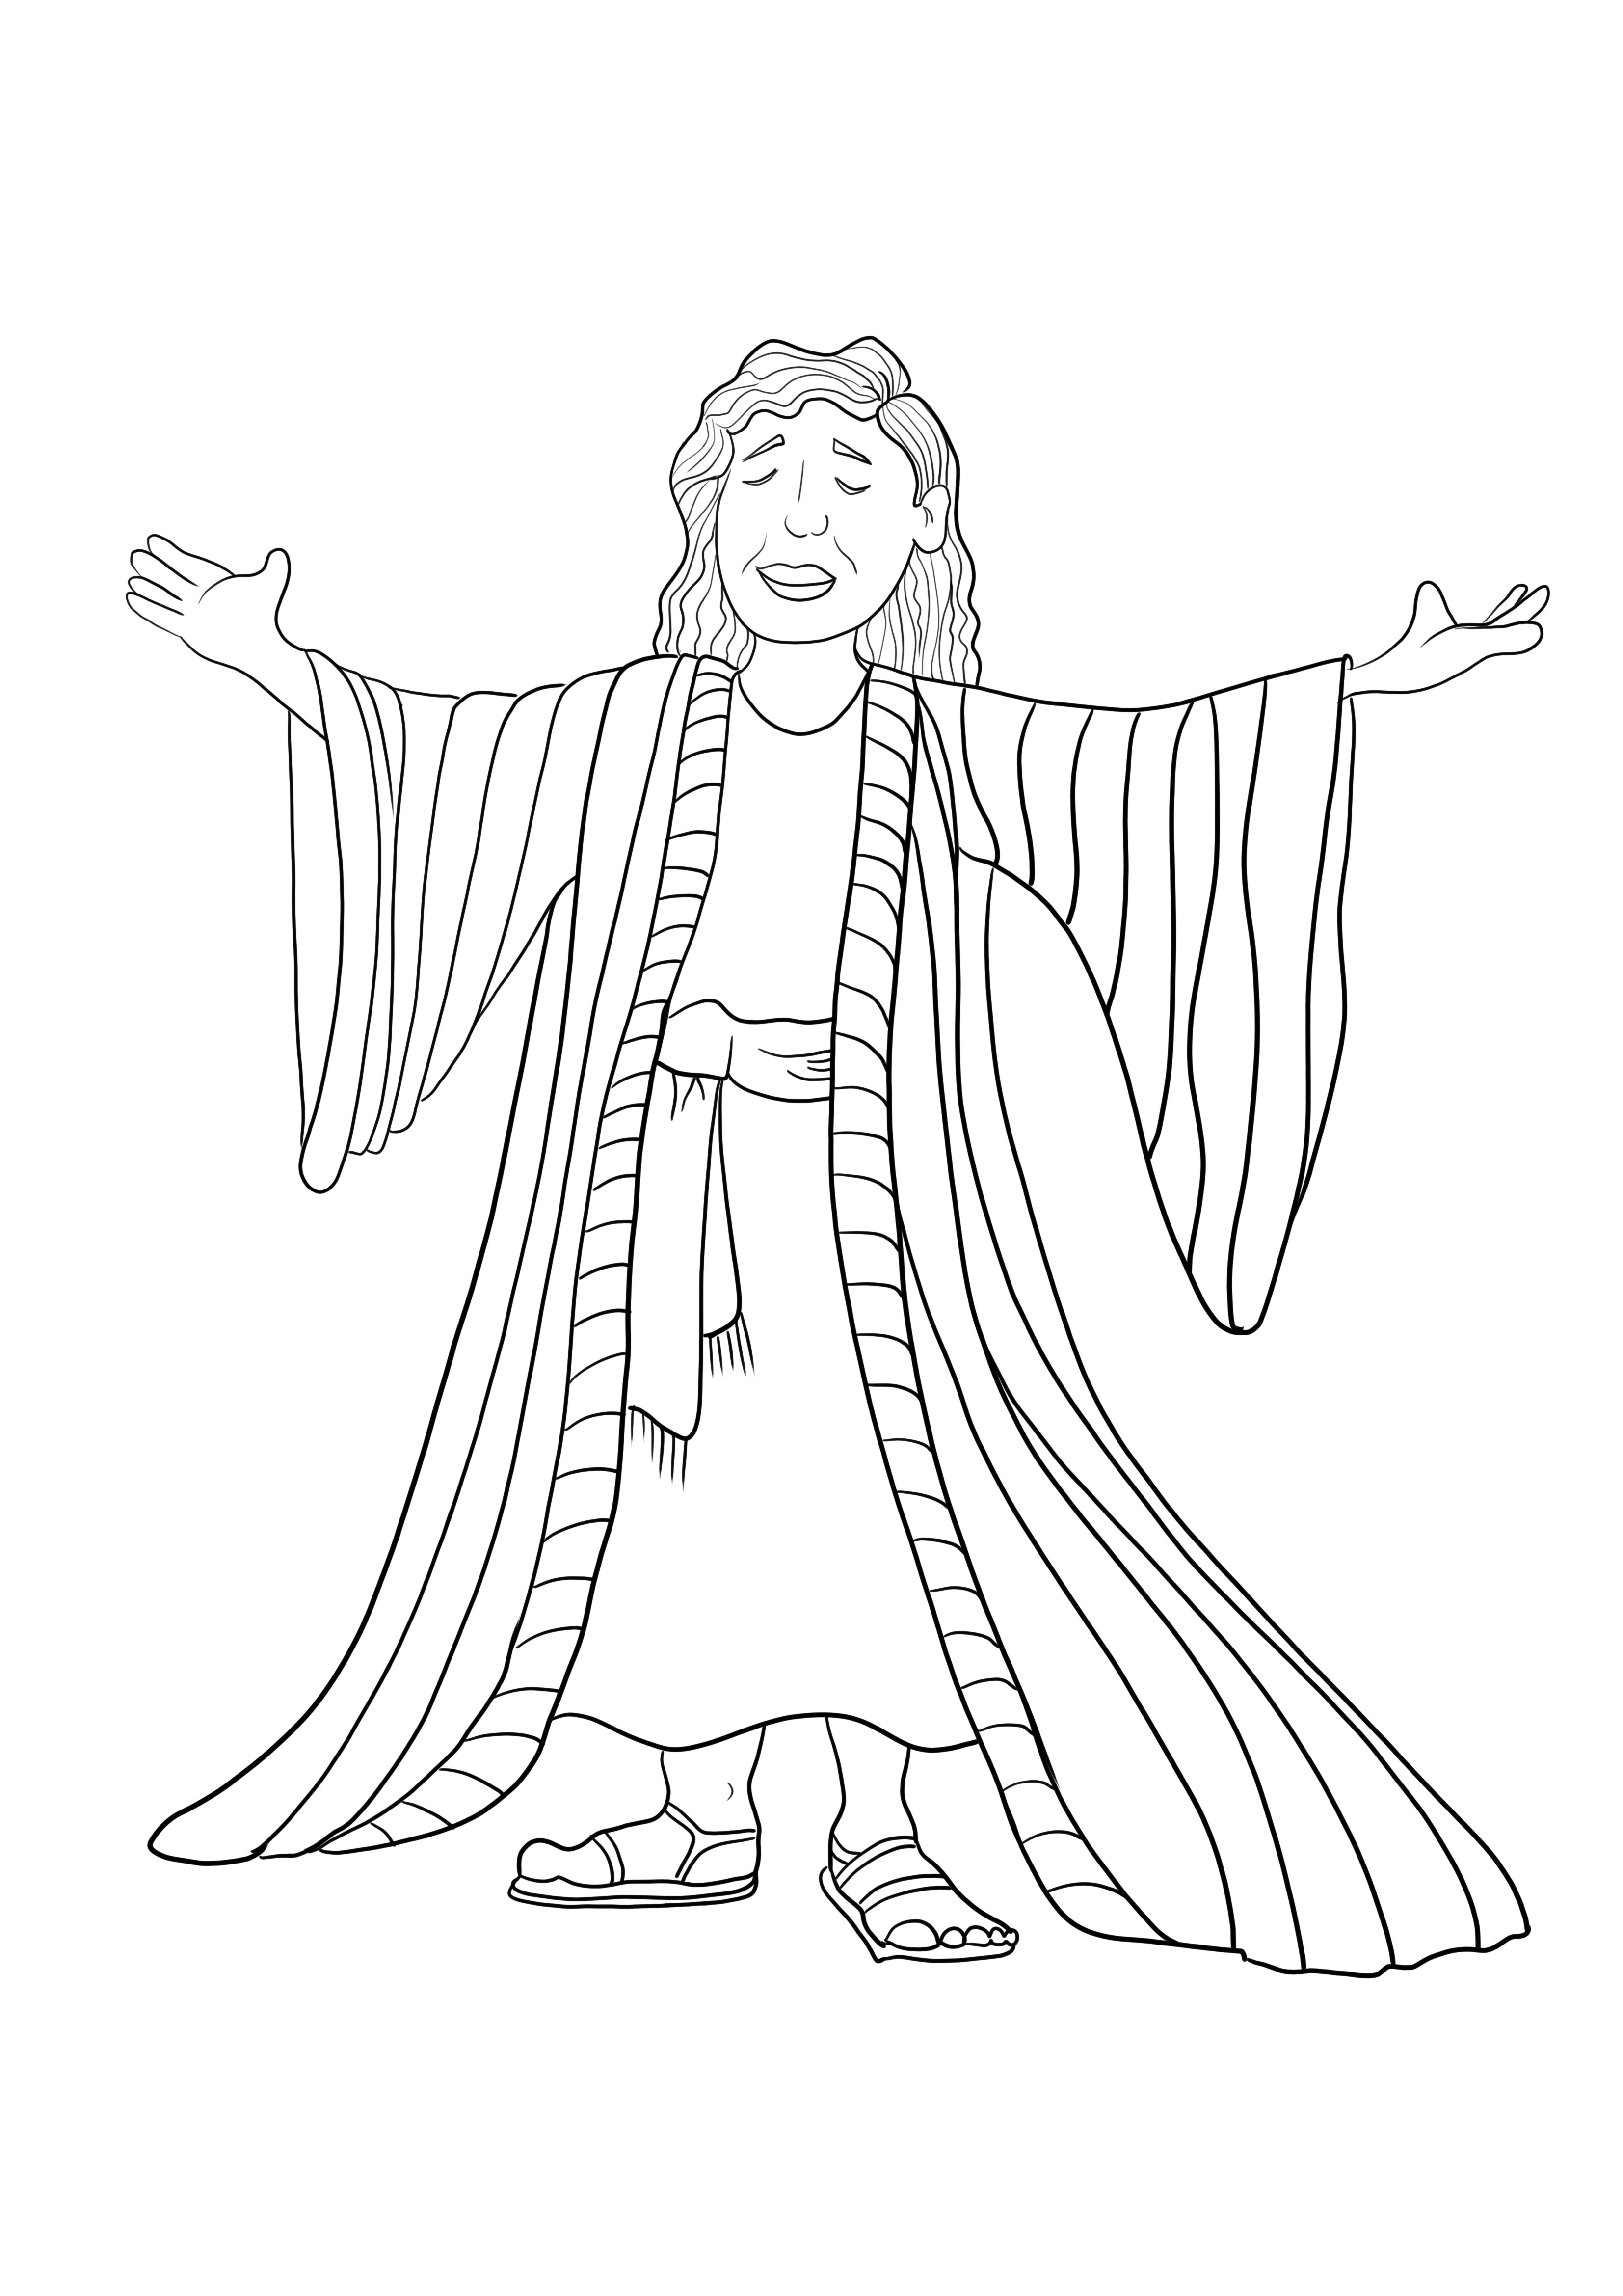 Józef, syn Jakuba modlącego się drukuj i koloruj obraz